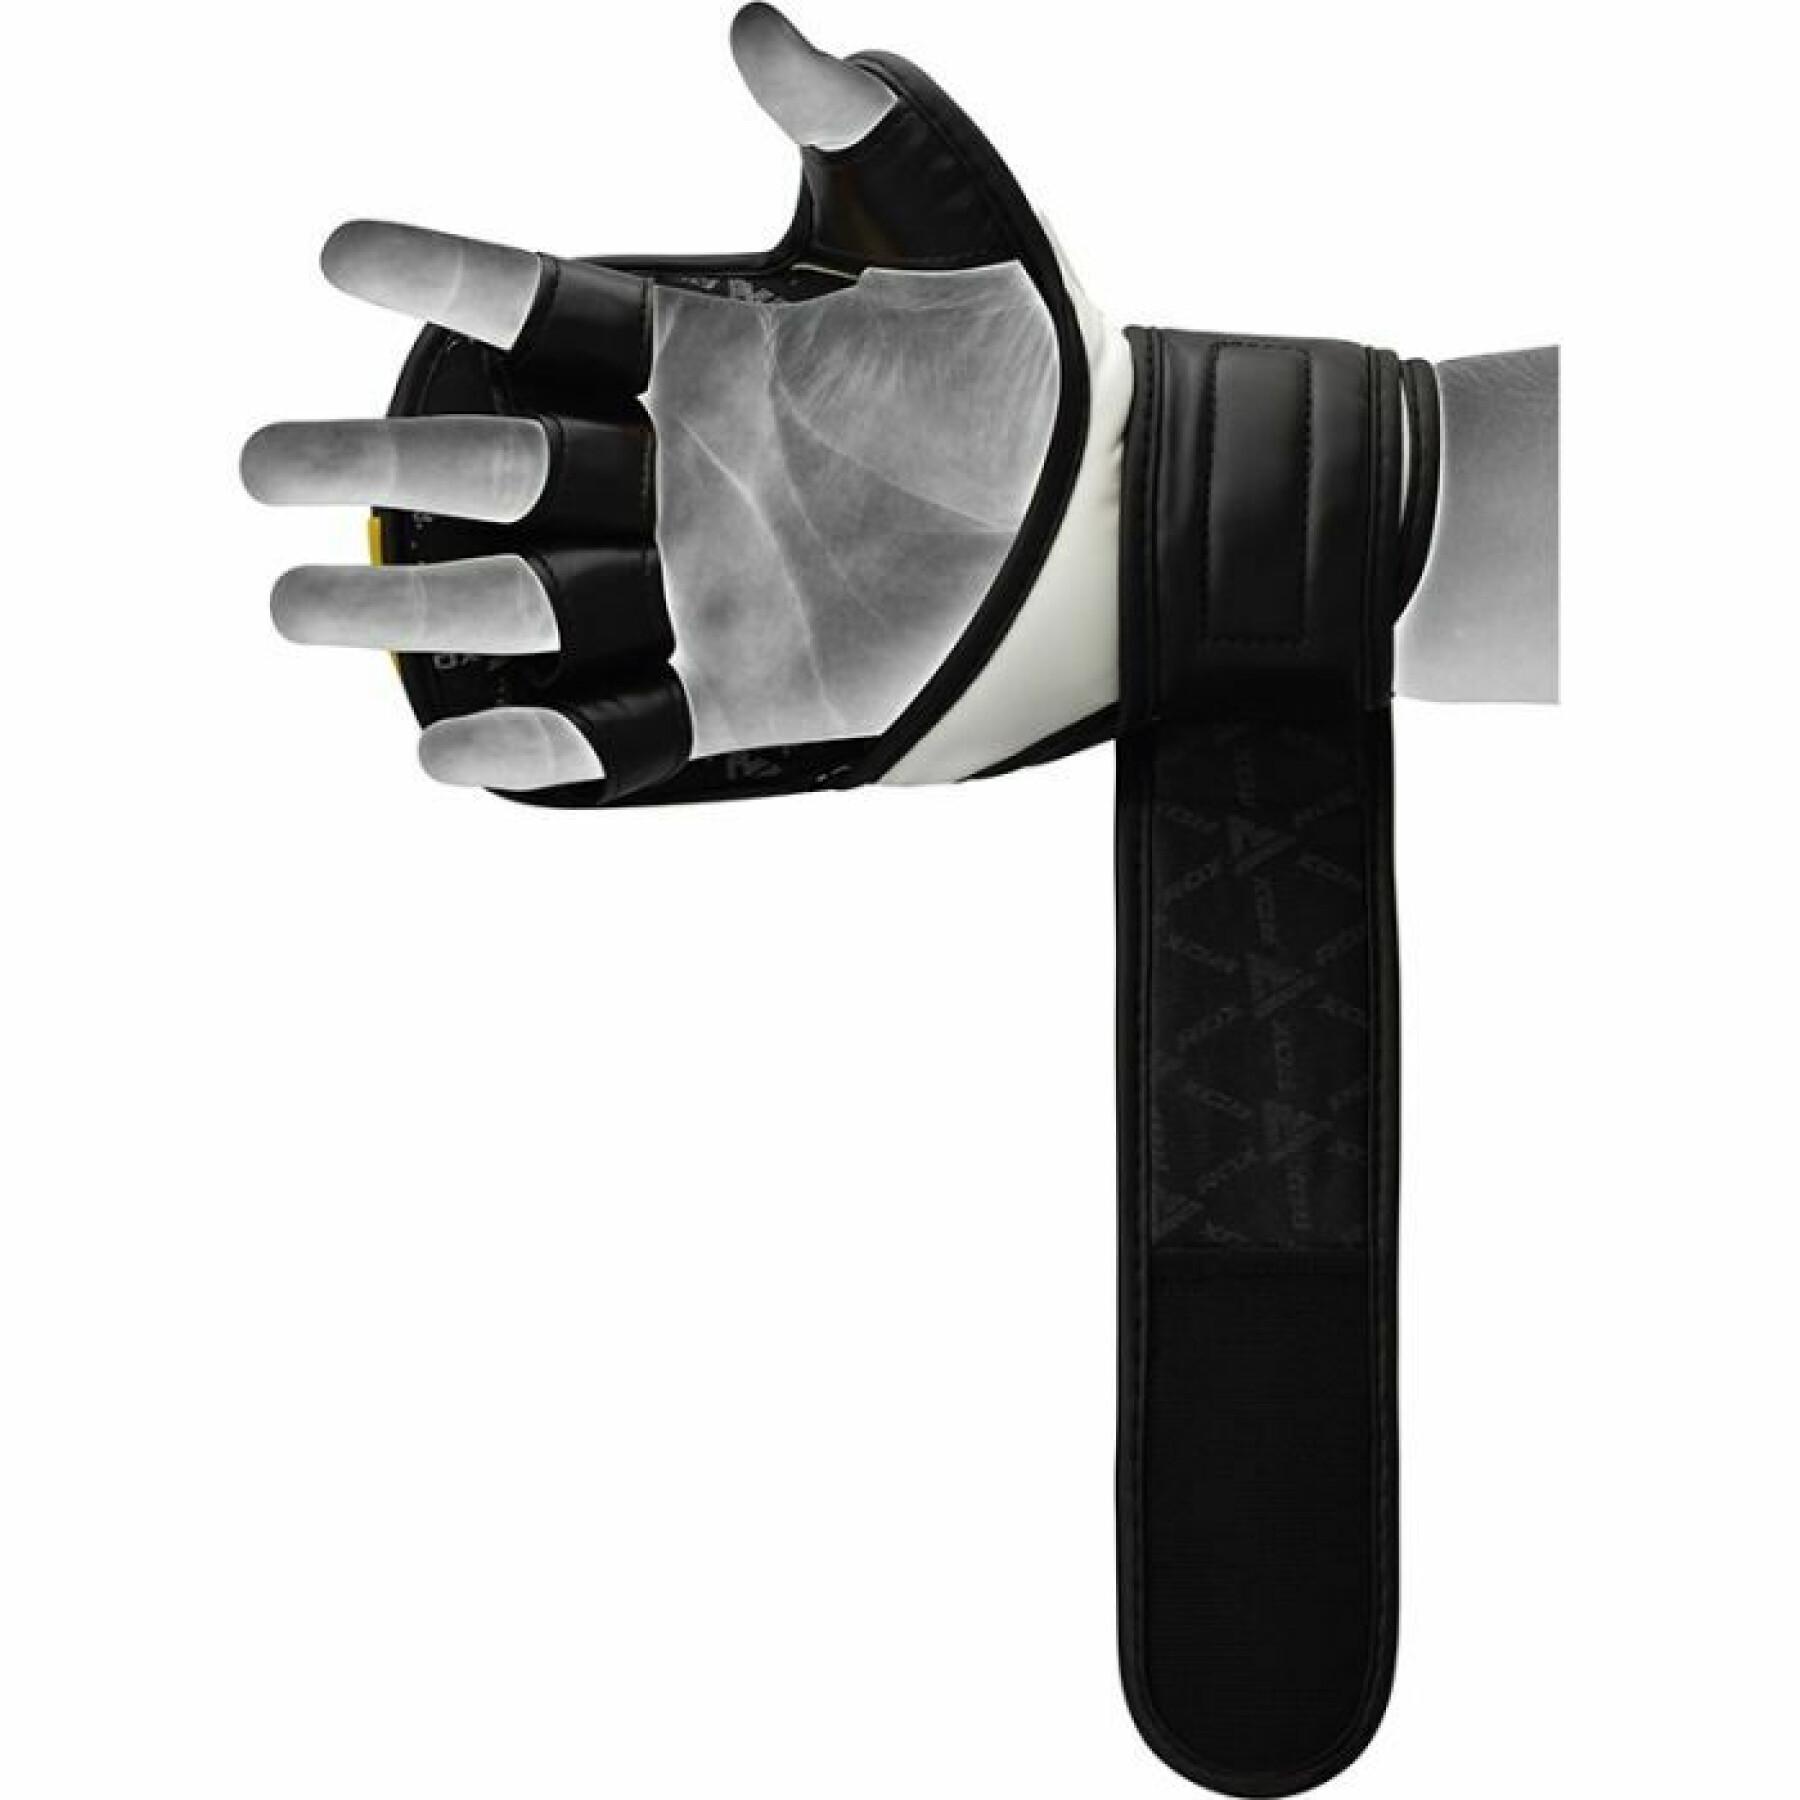 MMA-Handschuhe RDX T6 Plus